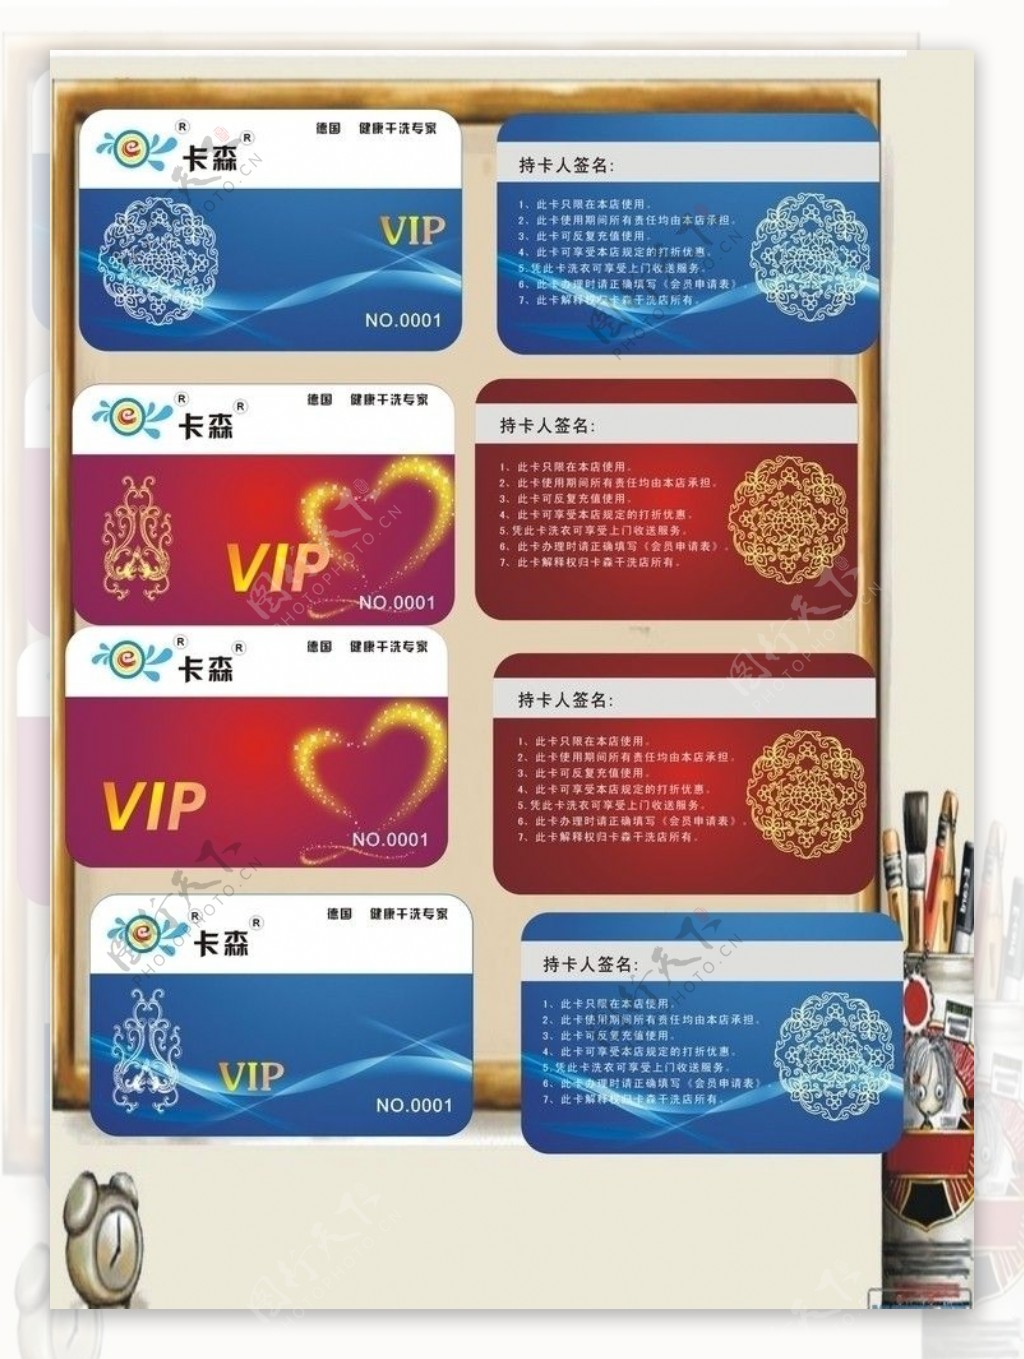 VIP卡贵宾卡模板设计图片